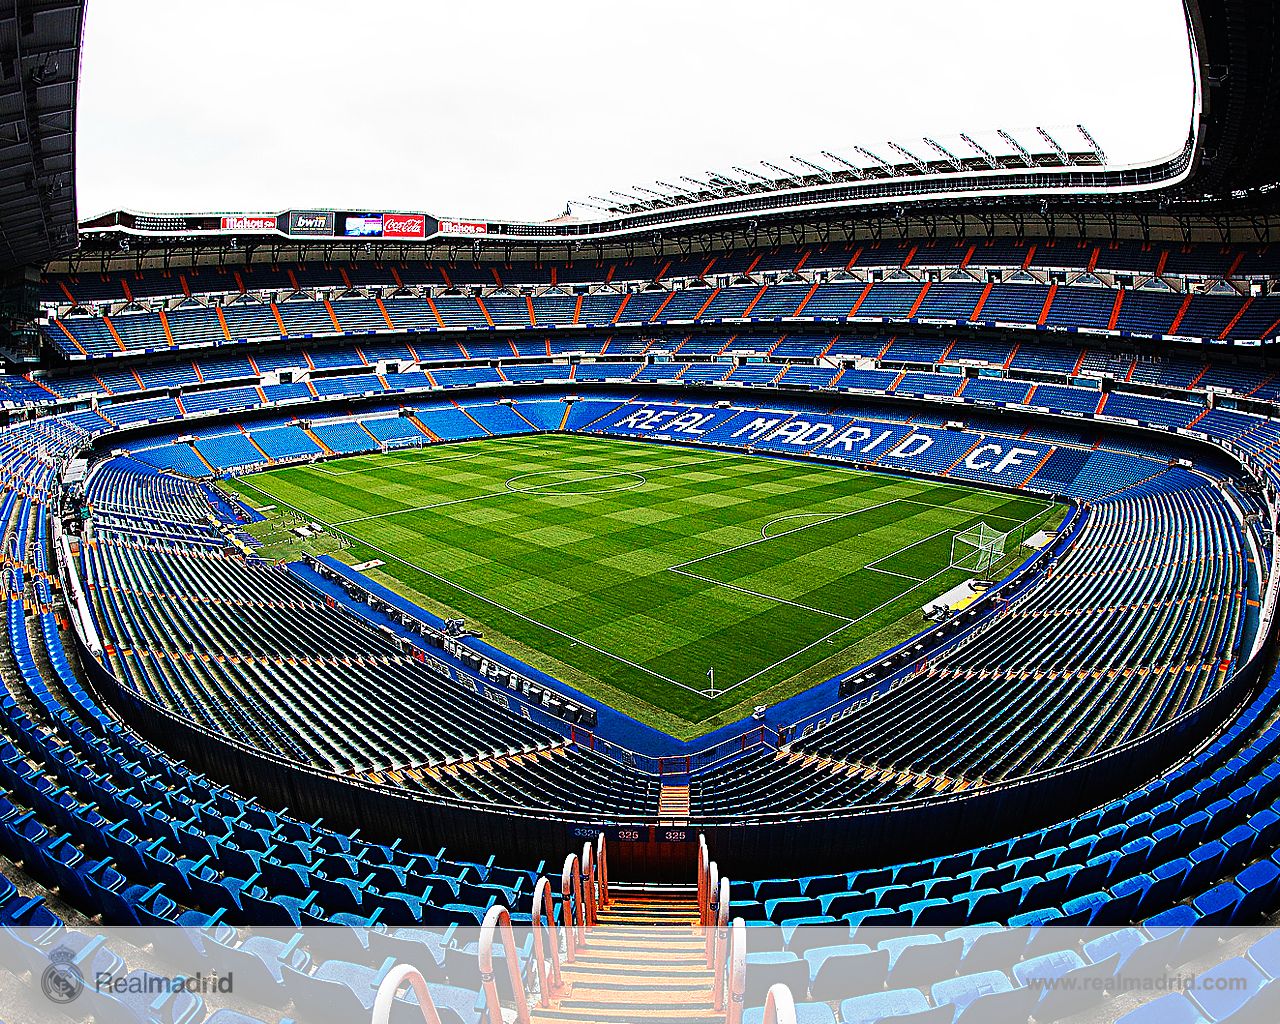 WALLPAPERS DEL ESTADIO SANTIAGO BERNABÉU MADRIDISTA. Real madrid, Madrid, Football stadiums